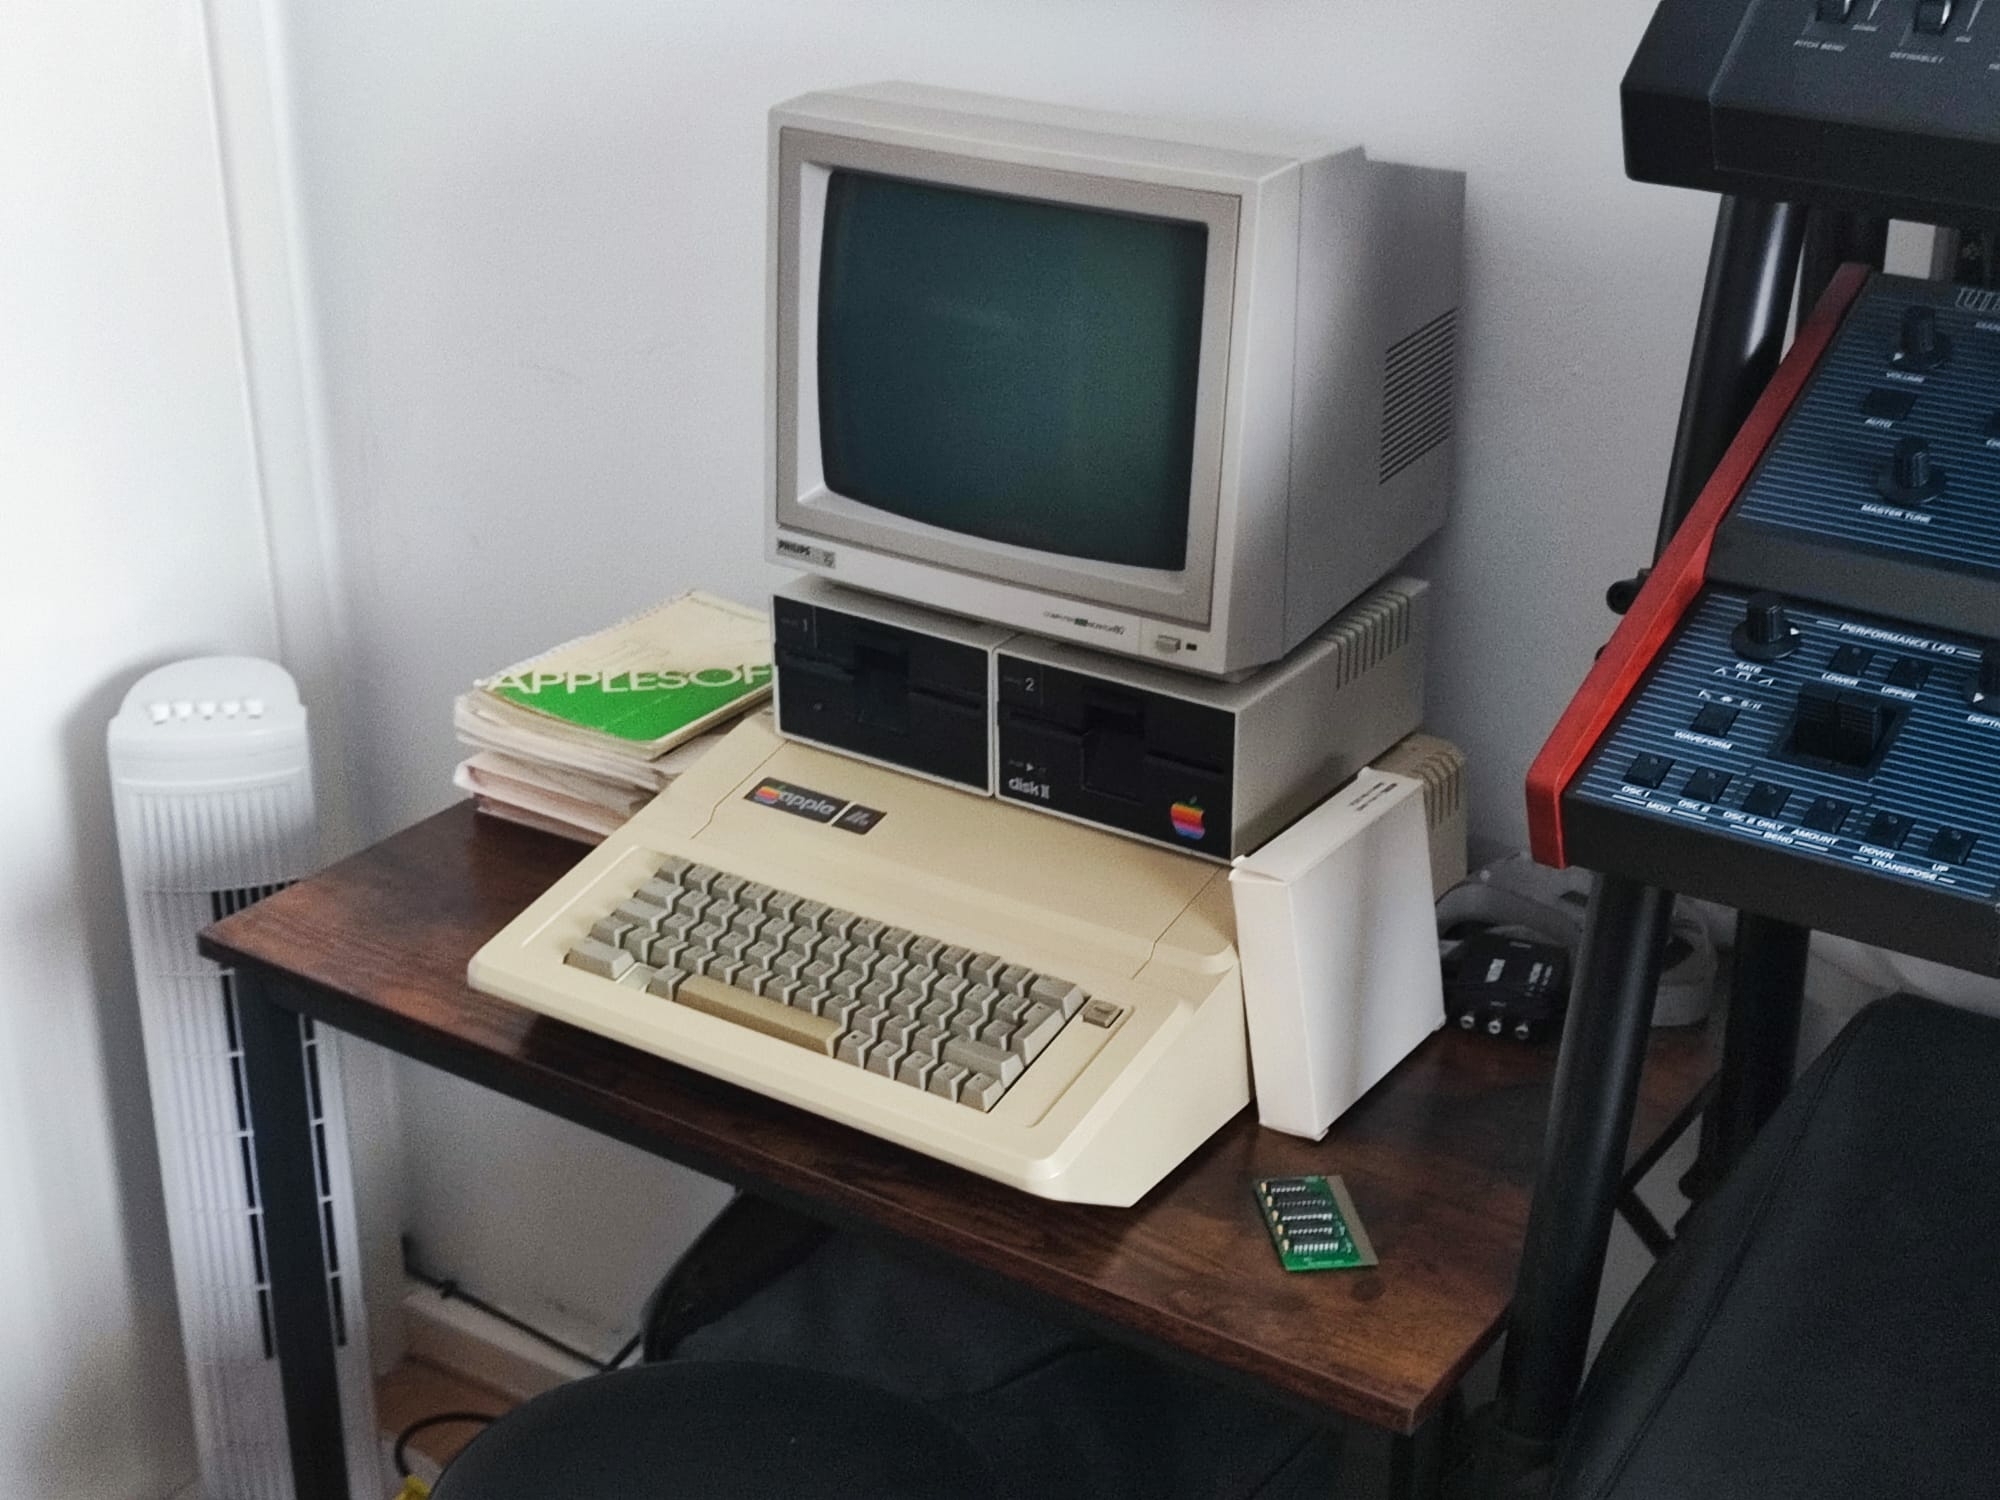 Apple IIe belonging to benanderson89